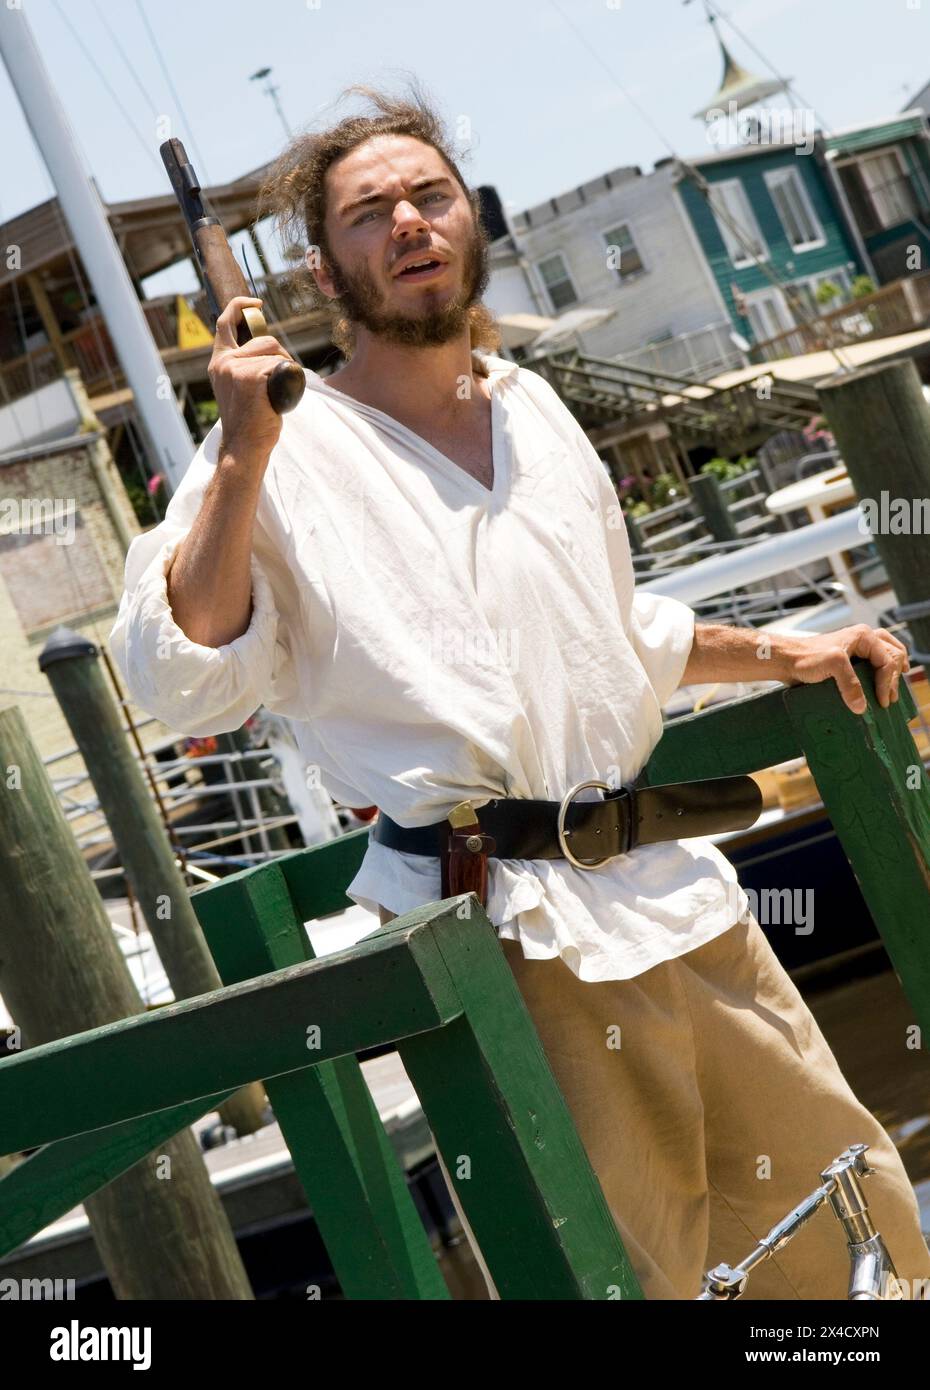 Un pirate en costume complet tire un pistolet depuis le pont du grand voilier Jolly Rover, amarré sur le bord de la rivière à Georgetown, Caroline du Sud, États-Unis. Banque D'Images